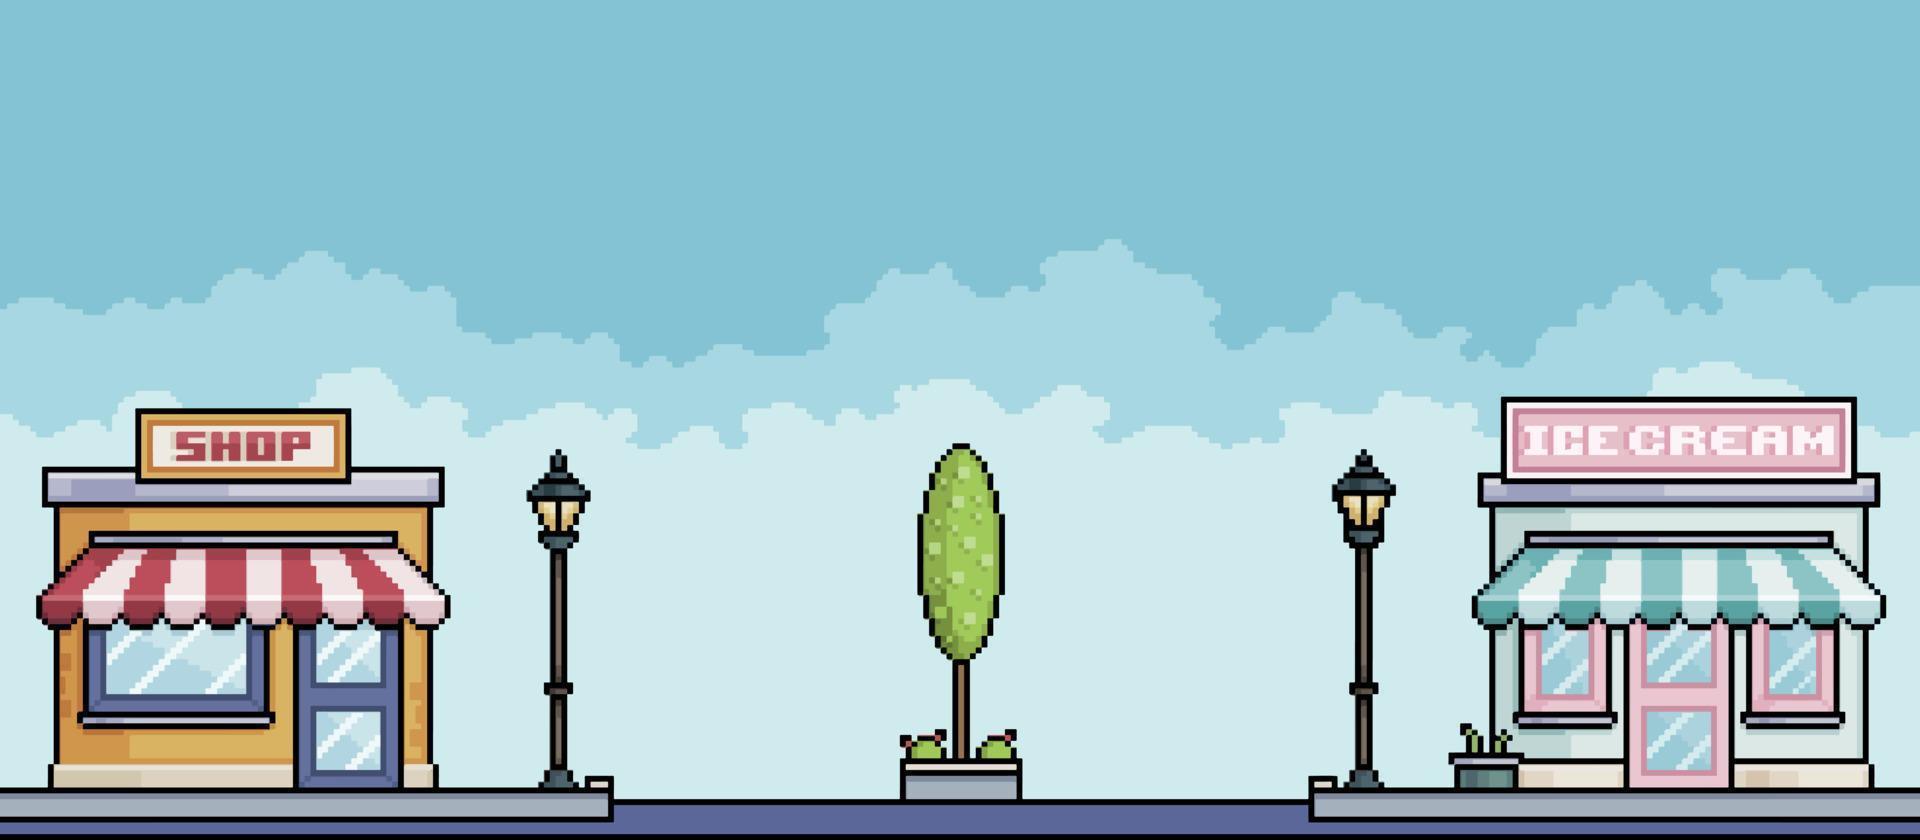 pixelart winkelstraat met winkels en laan met lamp en bomen. stadsgezicht achtergrond voor 8bit game vector